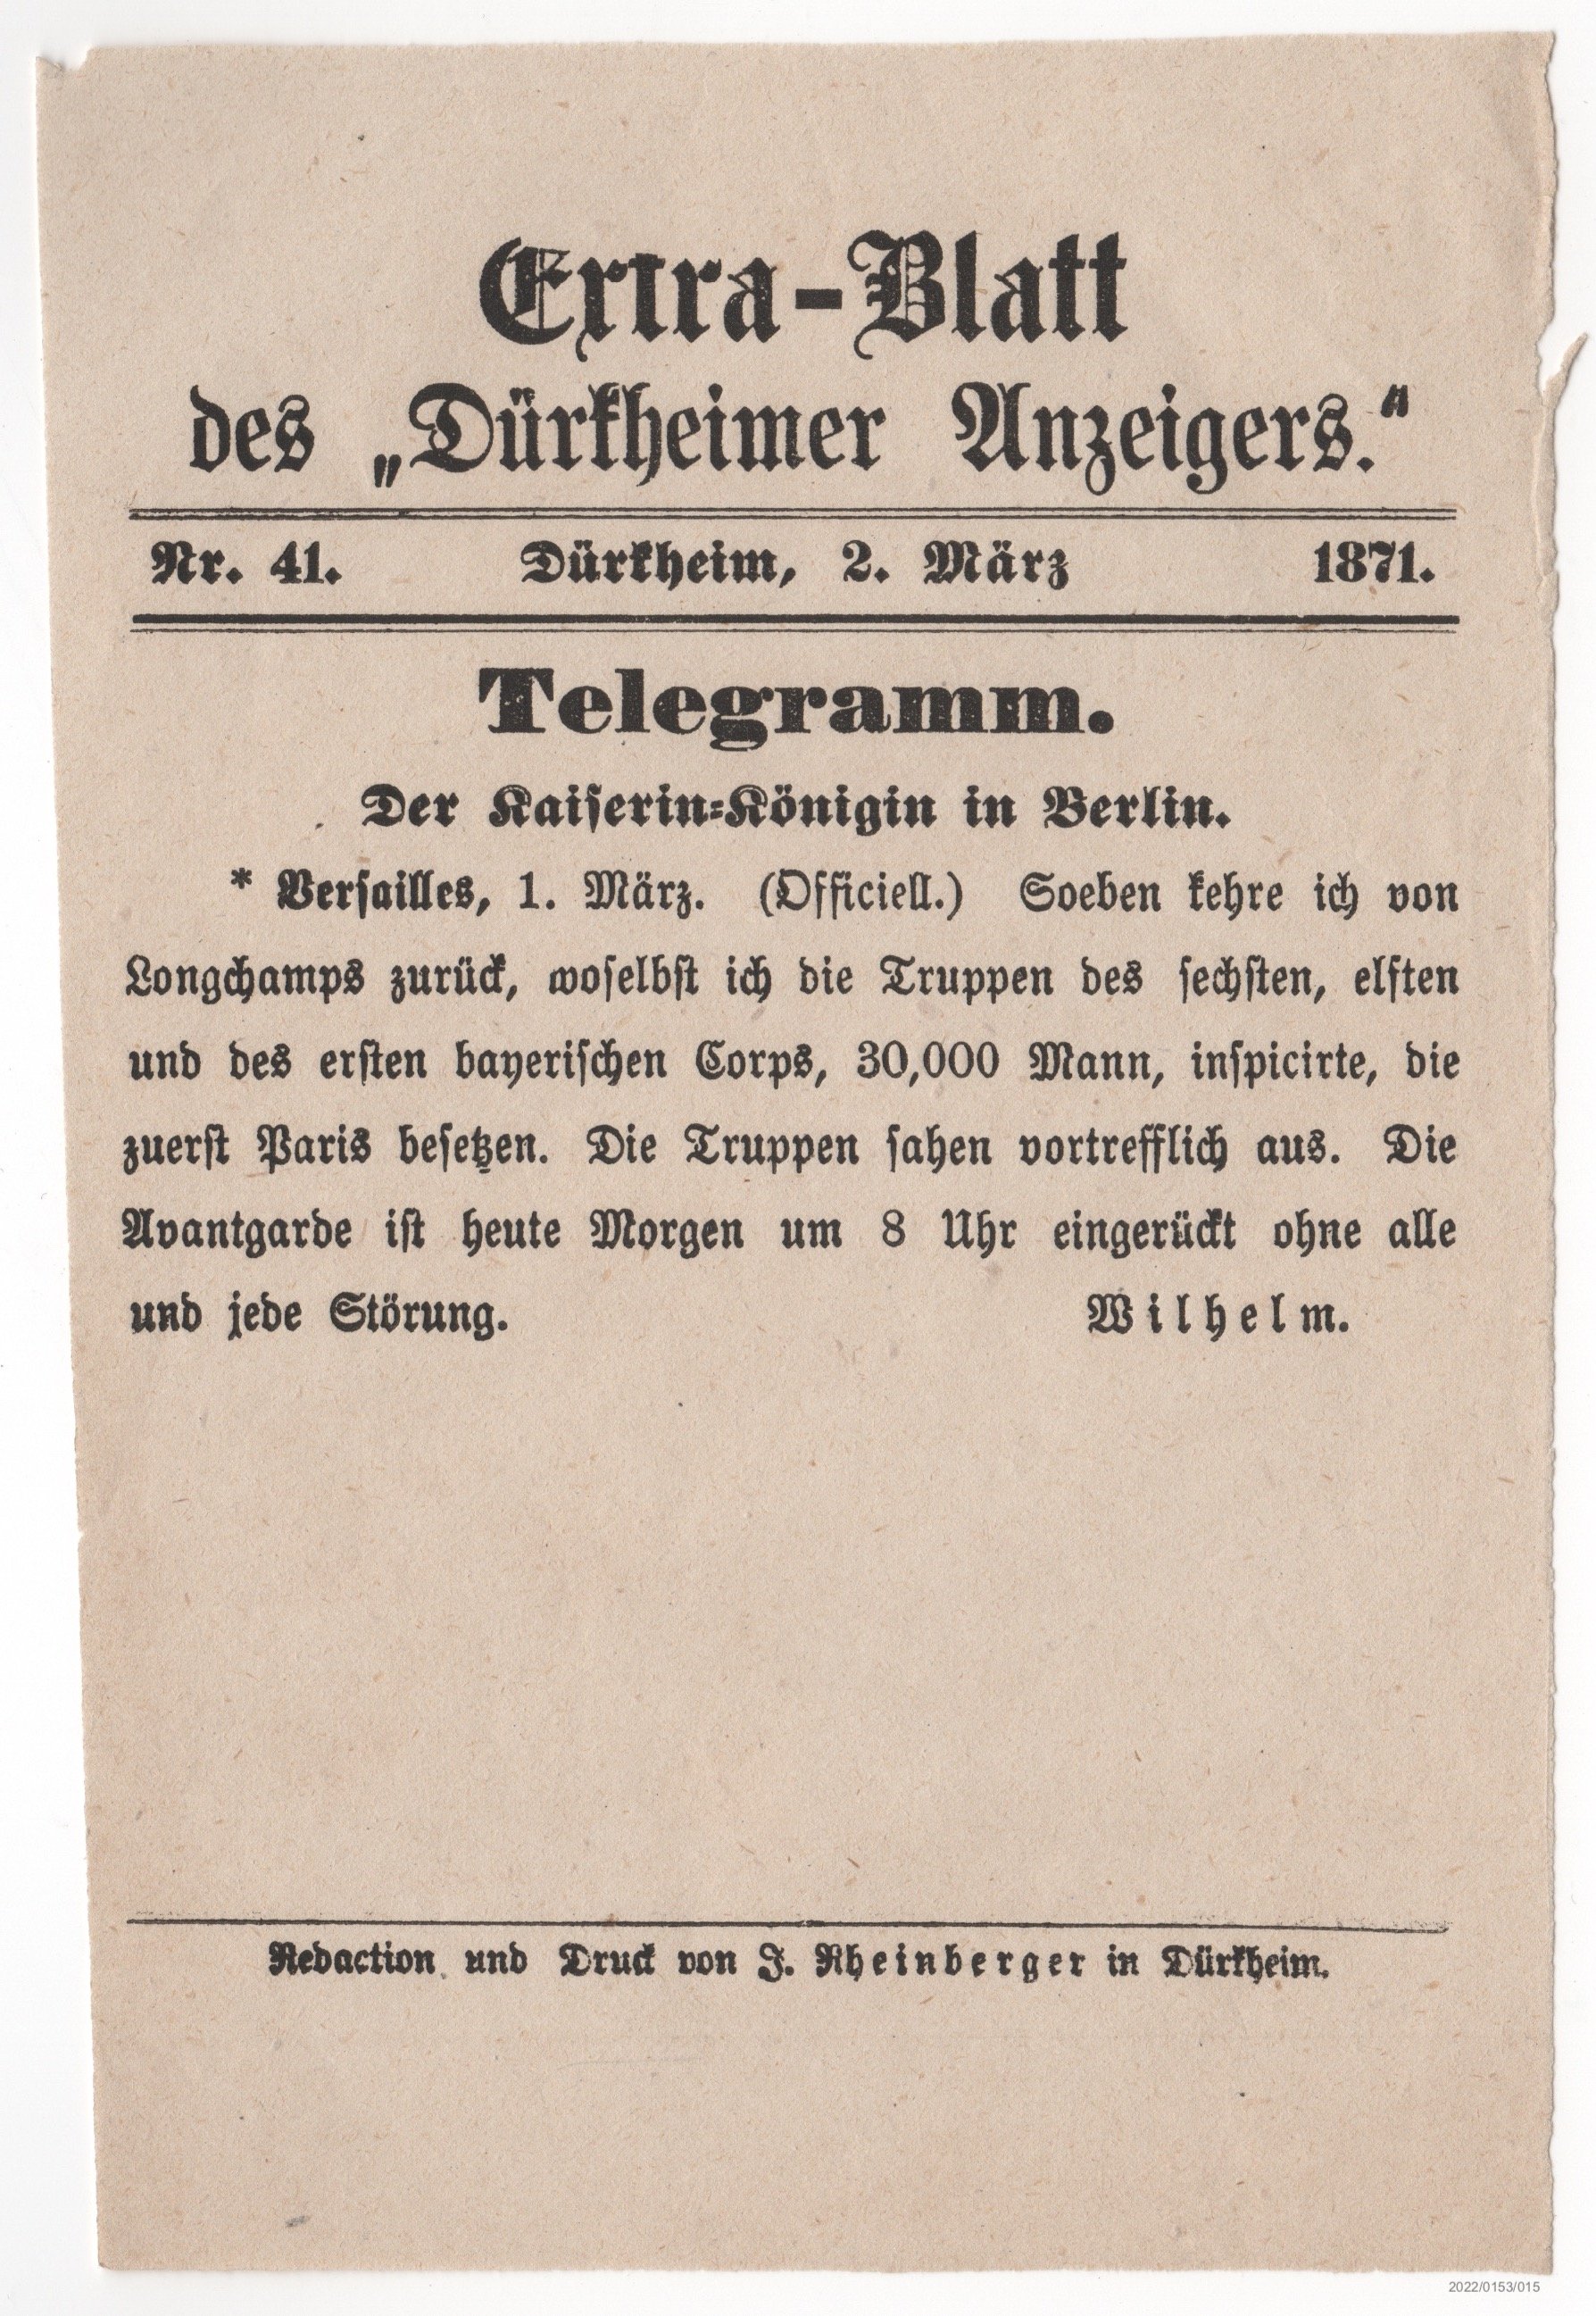 Extra-Blatt des Dürkheimer Anzeigers Nr. 41 02.03.1871 (Museumsgesellschaft Bad Dürkheim e. V. CC BY-NC-SA)